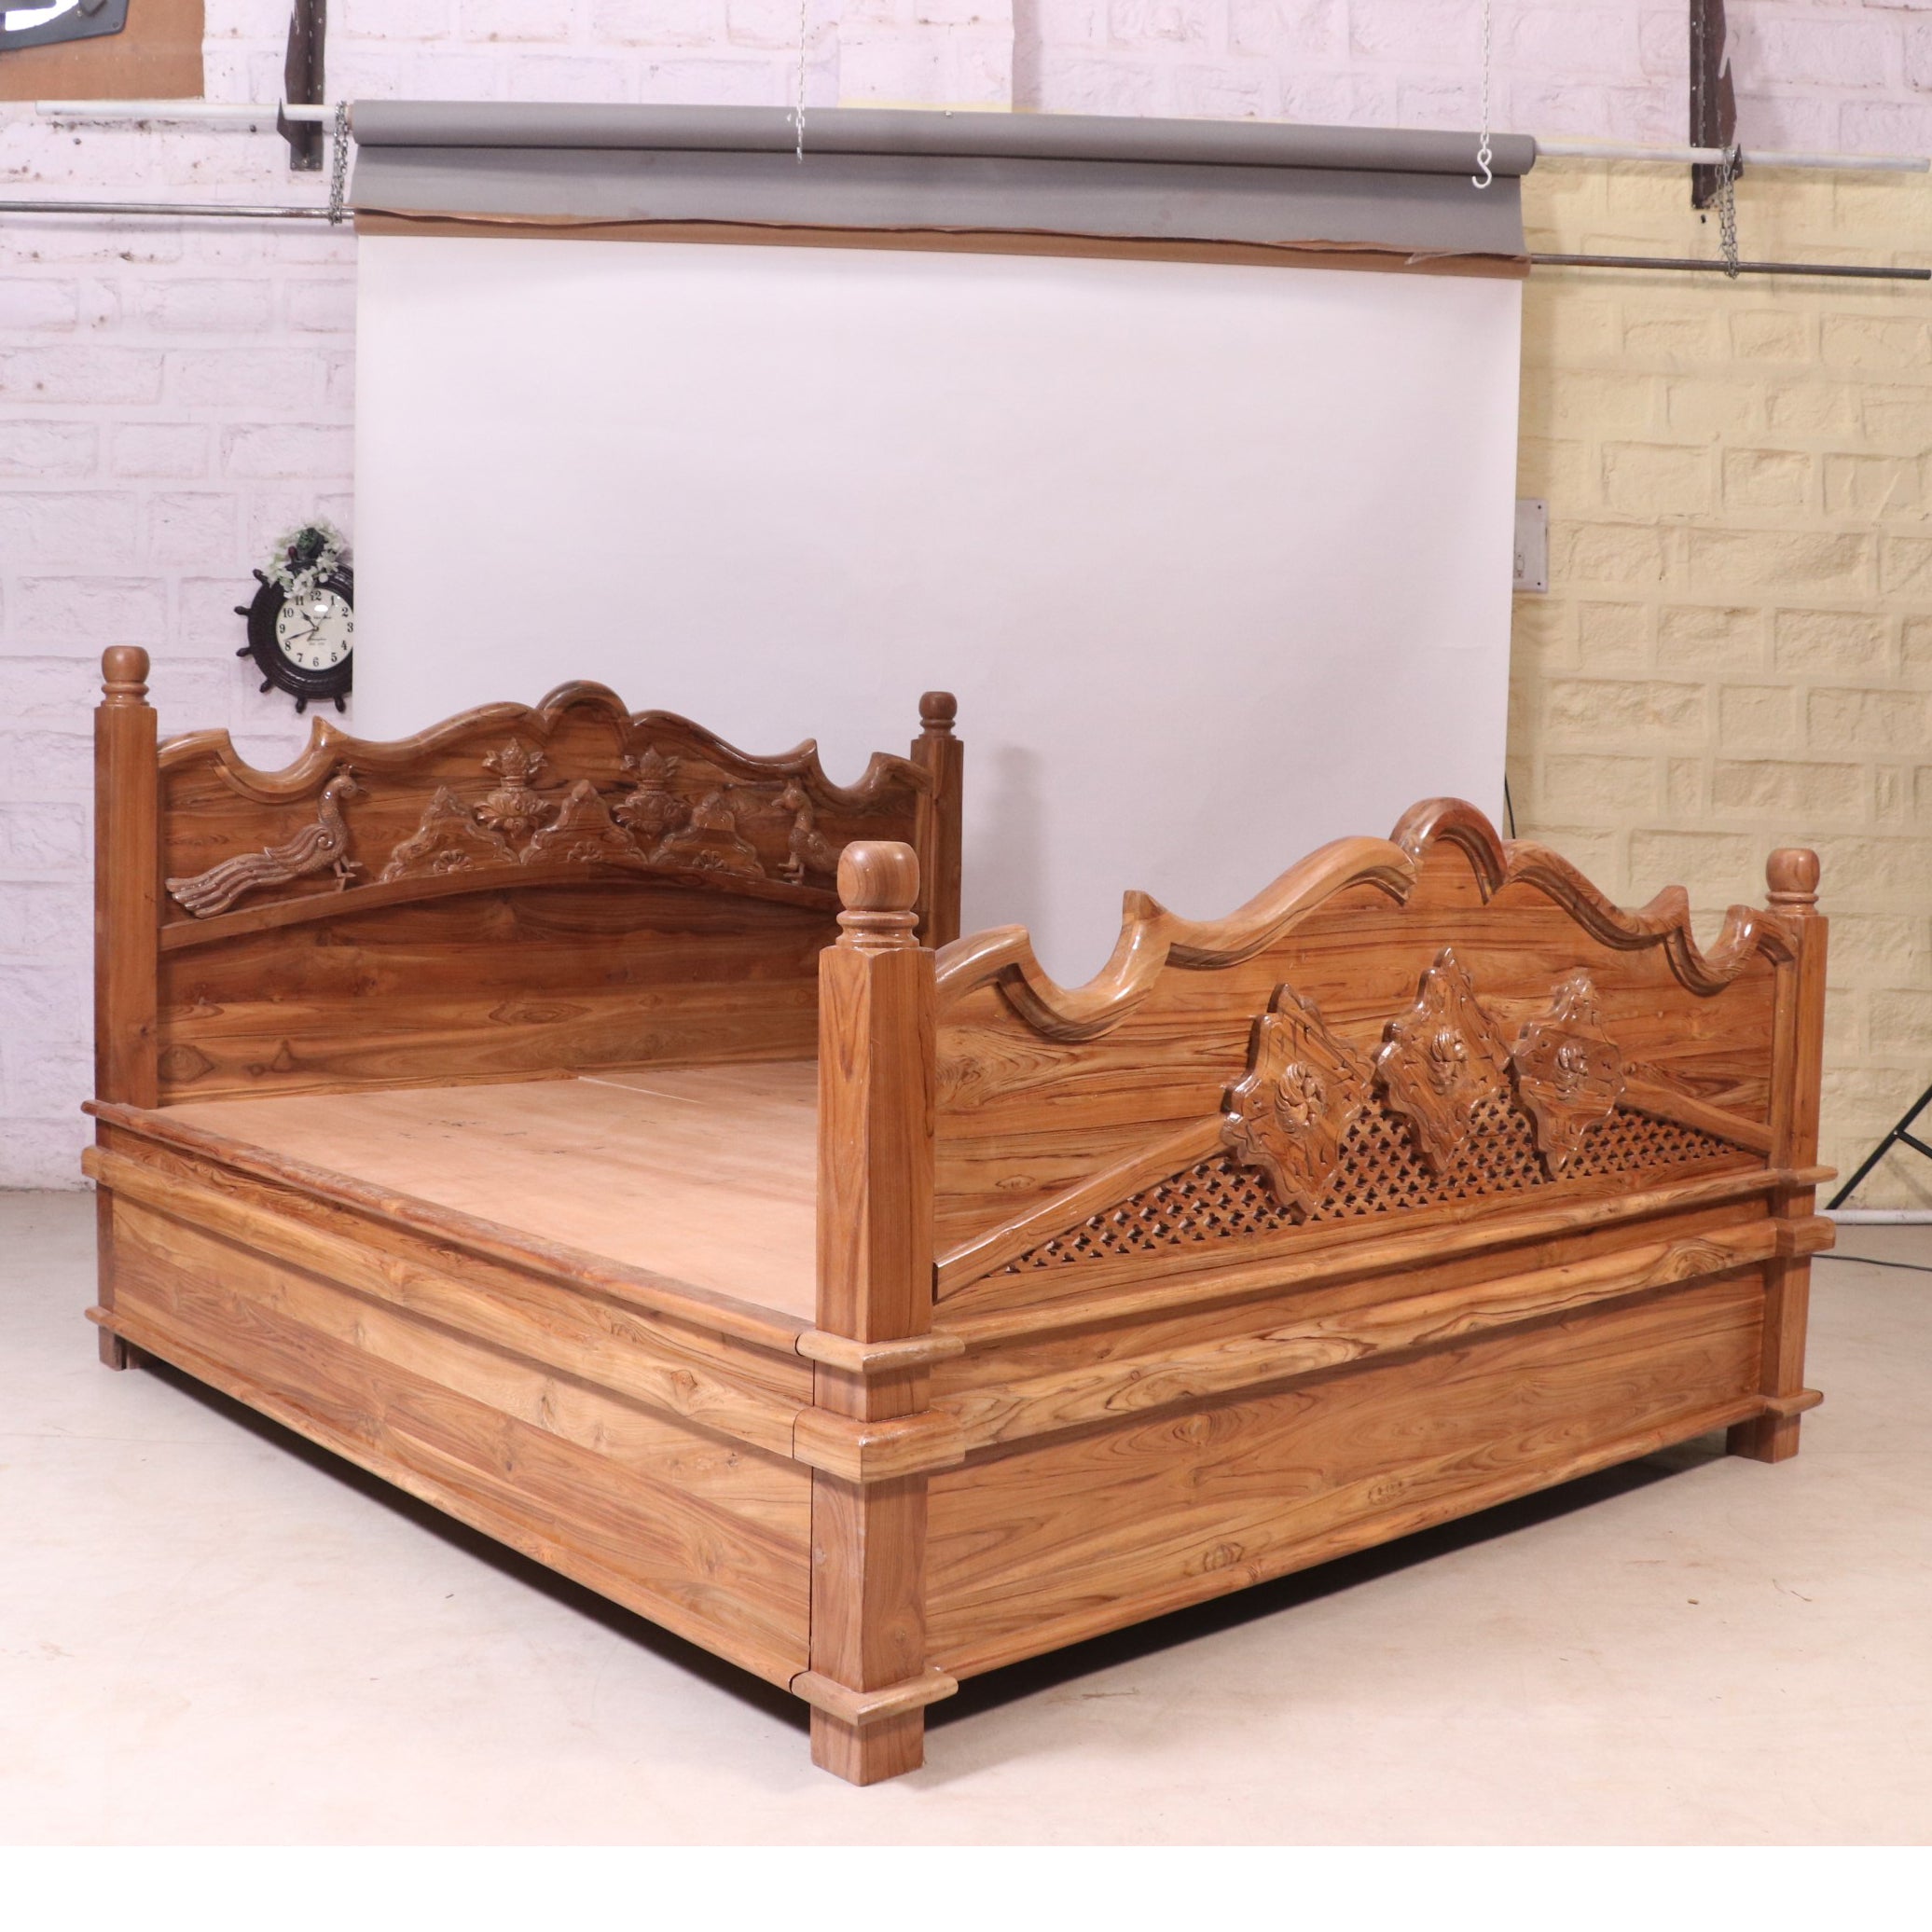 Storage bed Teak Wood Light Brown-Finish Bed Bed